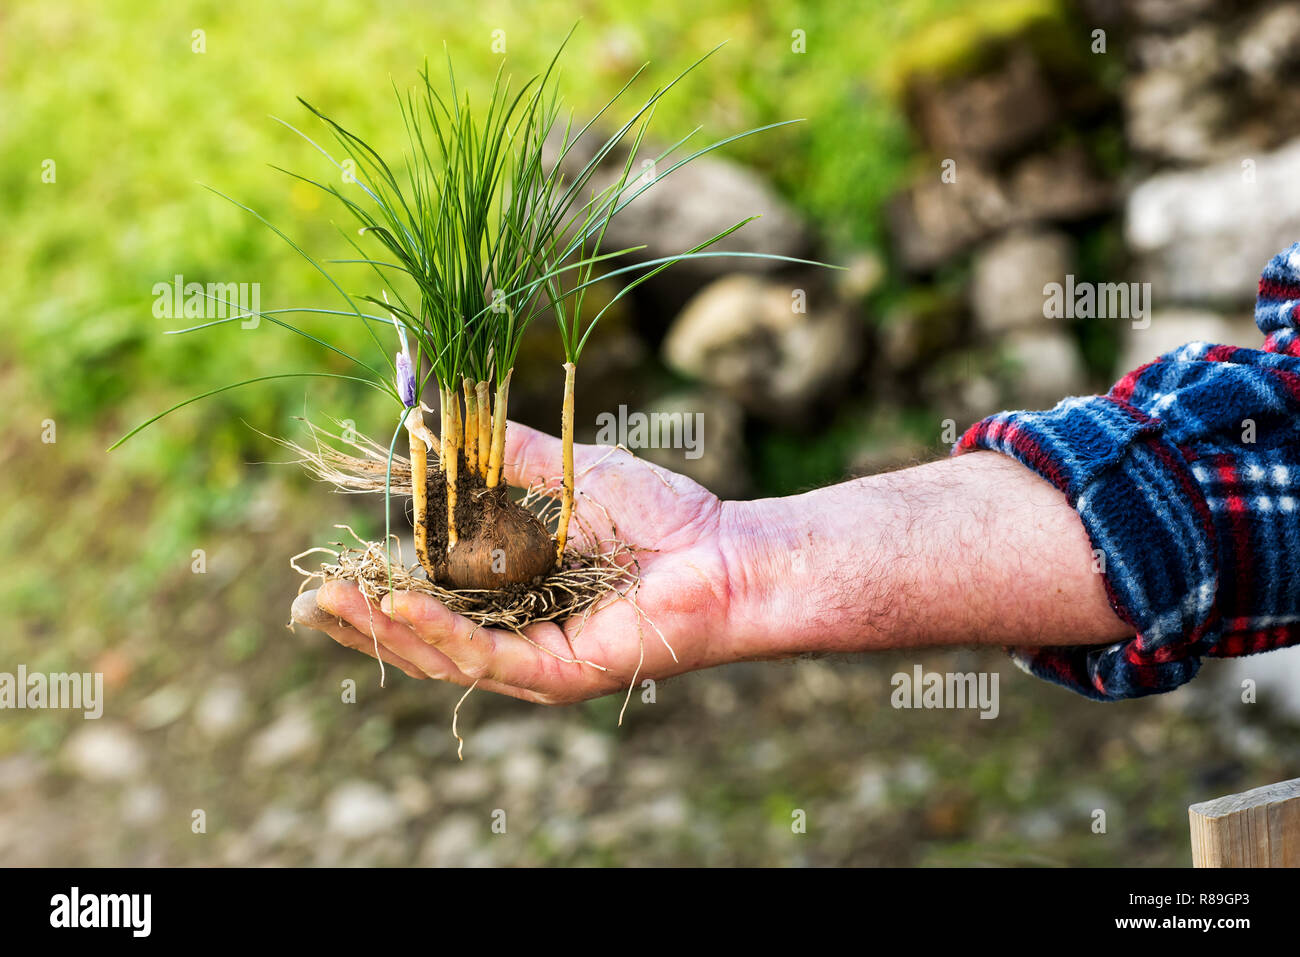 L'uomo la visualizzazione di un nuovo impianto di zafferano, Crocus sativus, e la lampadina nella sua mano tesa che mostra l'habitus di crescita della pianta Foto Stock